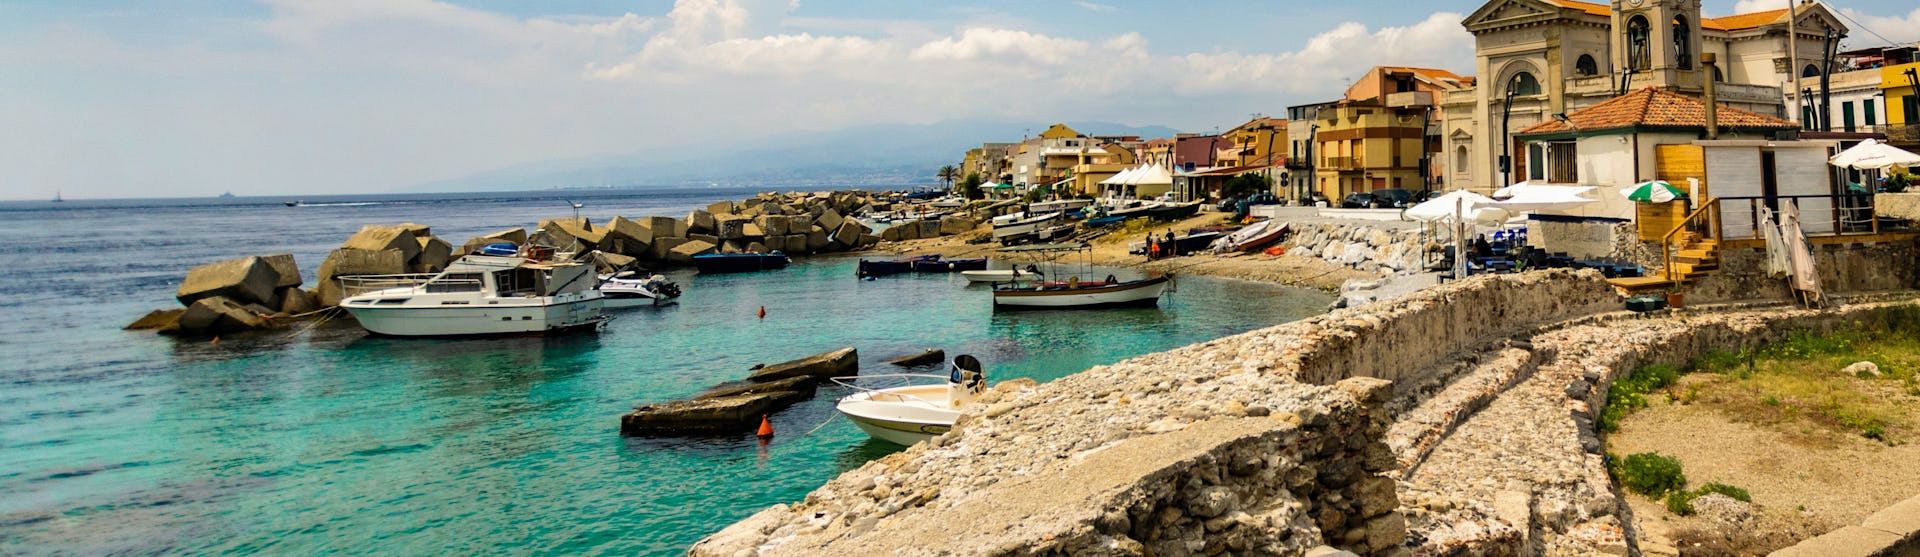 Messina i Italien med havet, små båtar och gamla byggnader.